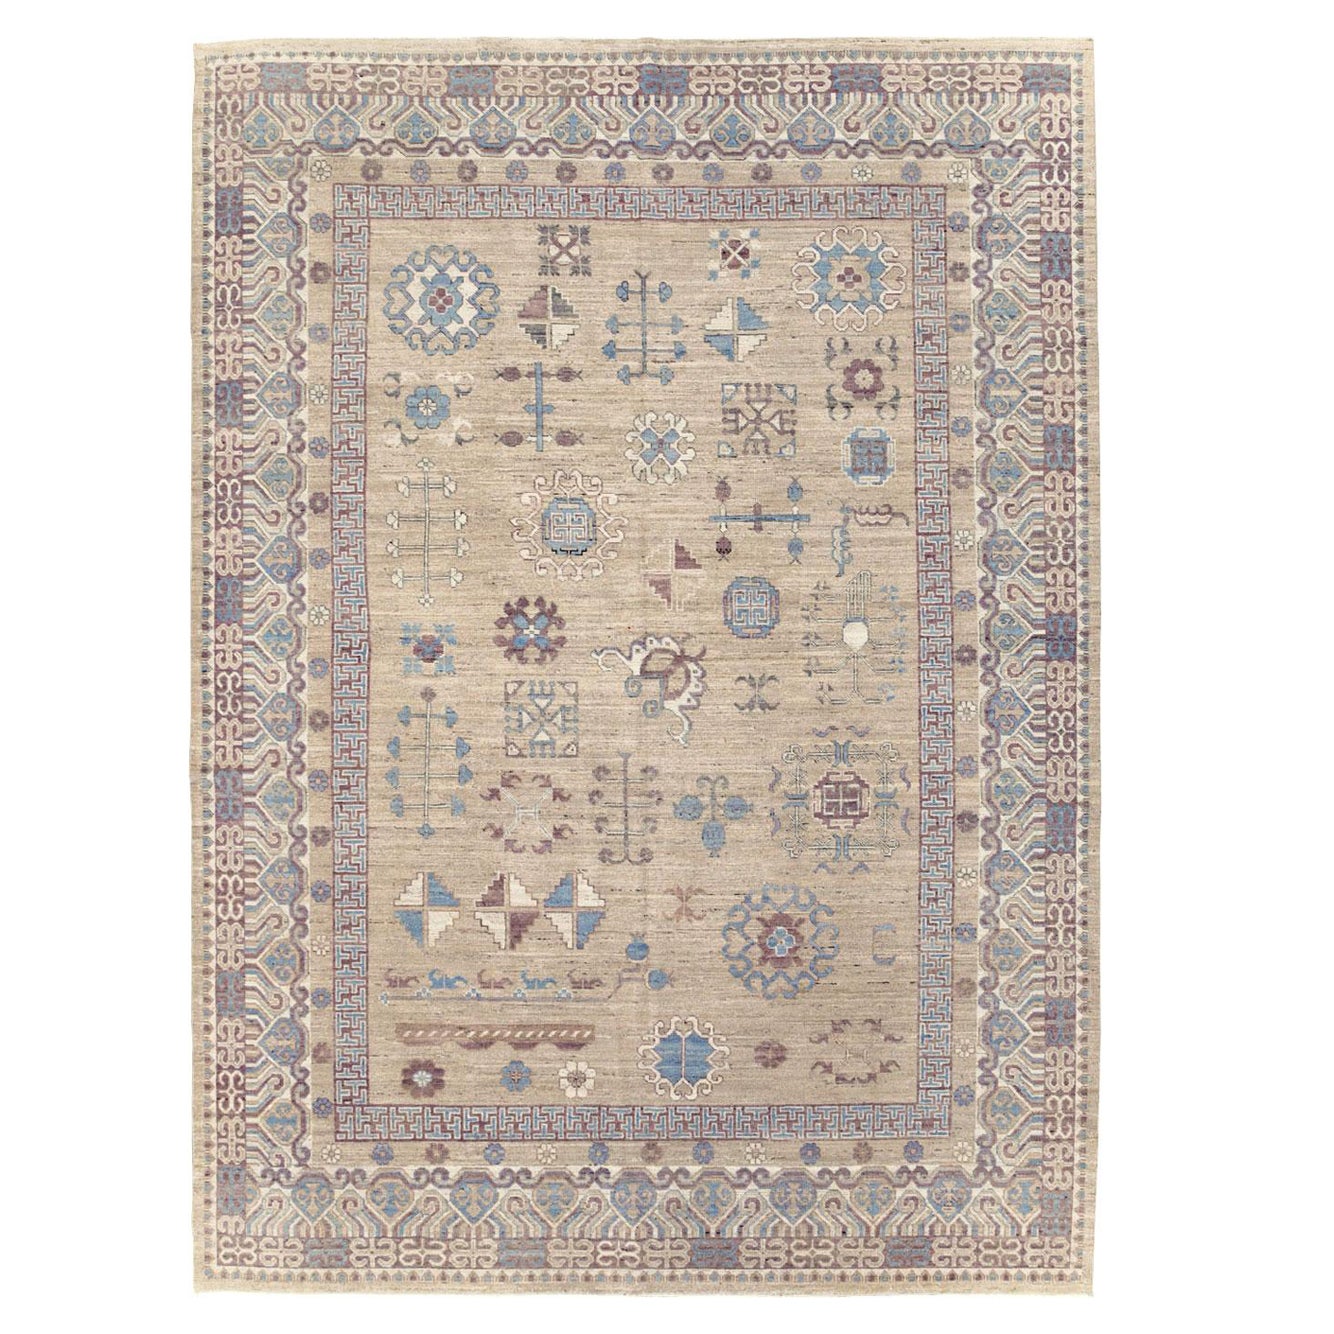 Galerie Shabab Collection Handmade Modern East Turkestan Khotan Room Size Carpet For Sale